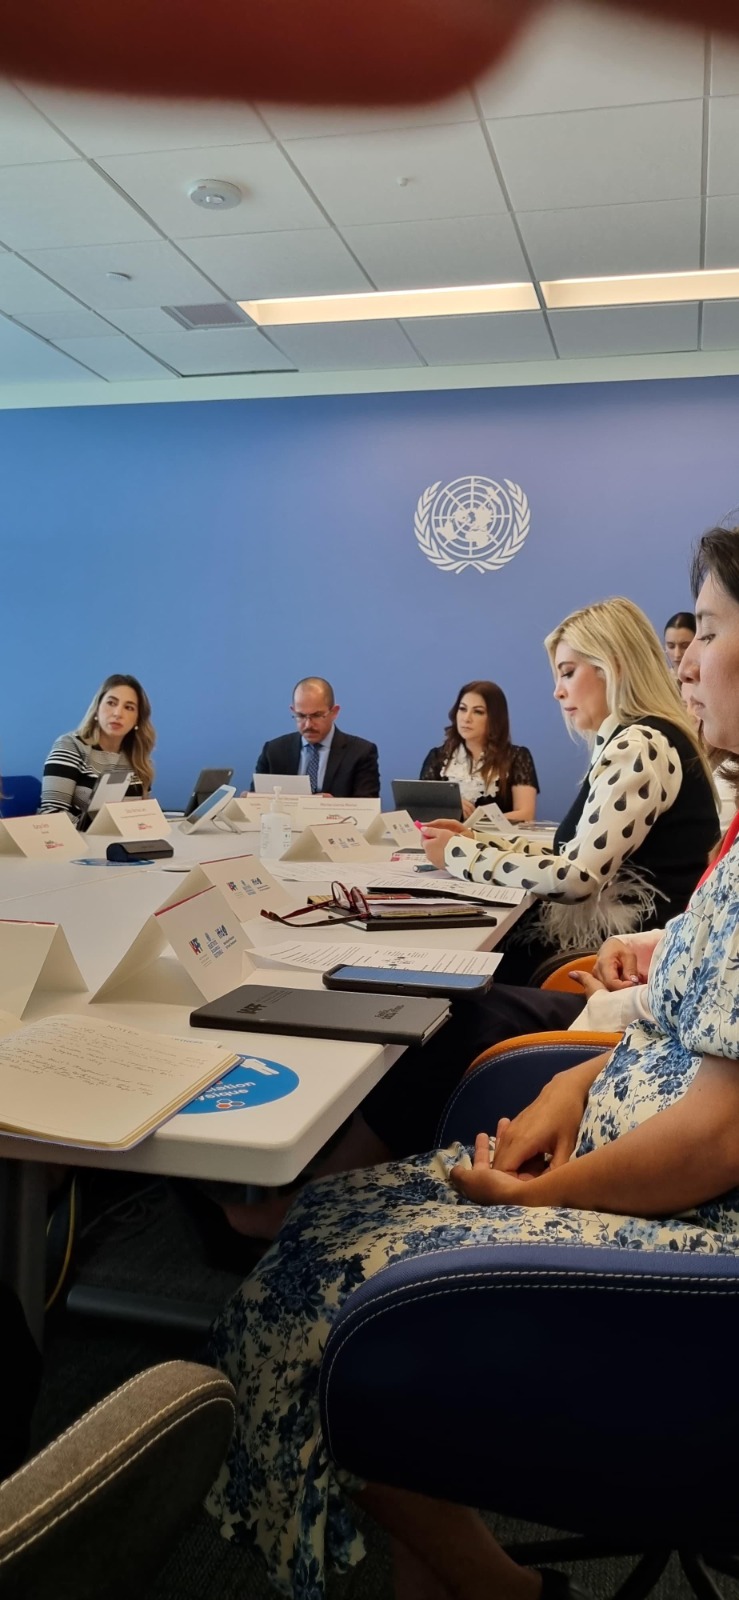 Presenta Congreso de Sonora proyecto de inclusión ante miembros de la ONU